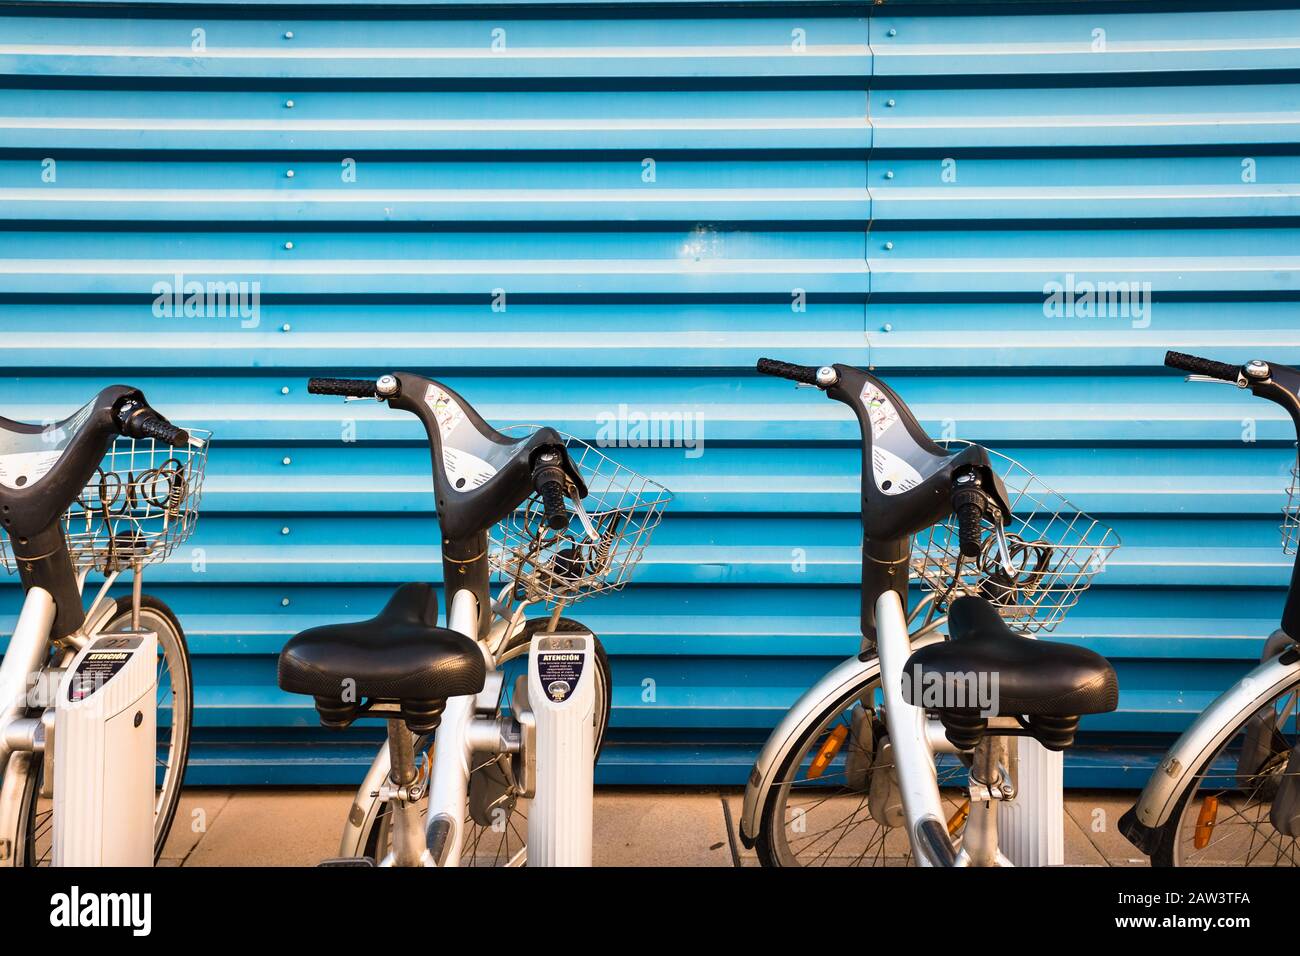 Valencia, Spagna - 5 febbraio 2020: Noleggio biciclette della società Valenbisi JCDecaux parcheggiata in strada. Foto Stock